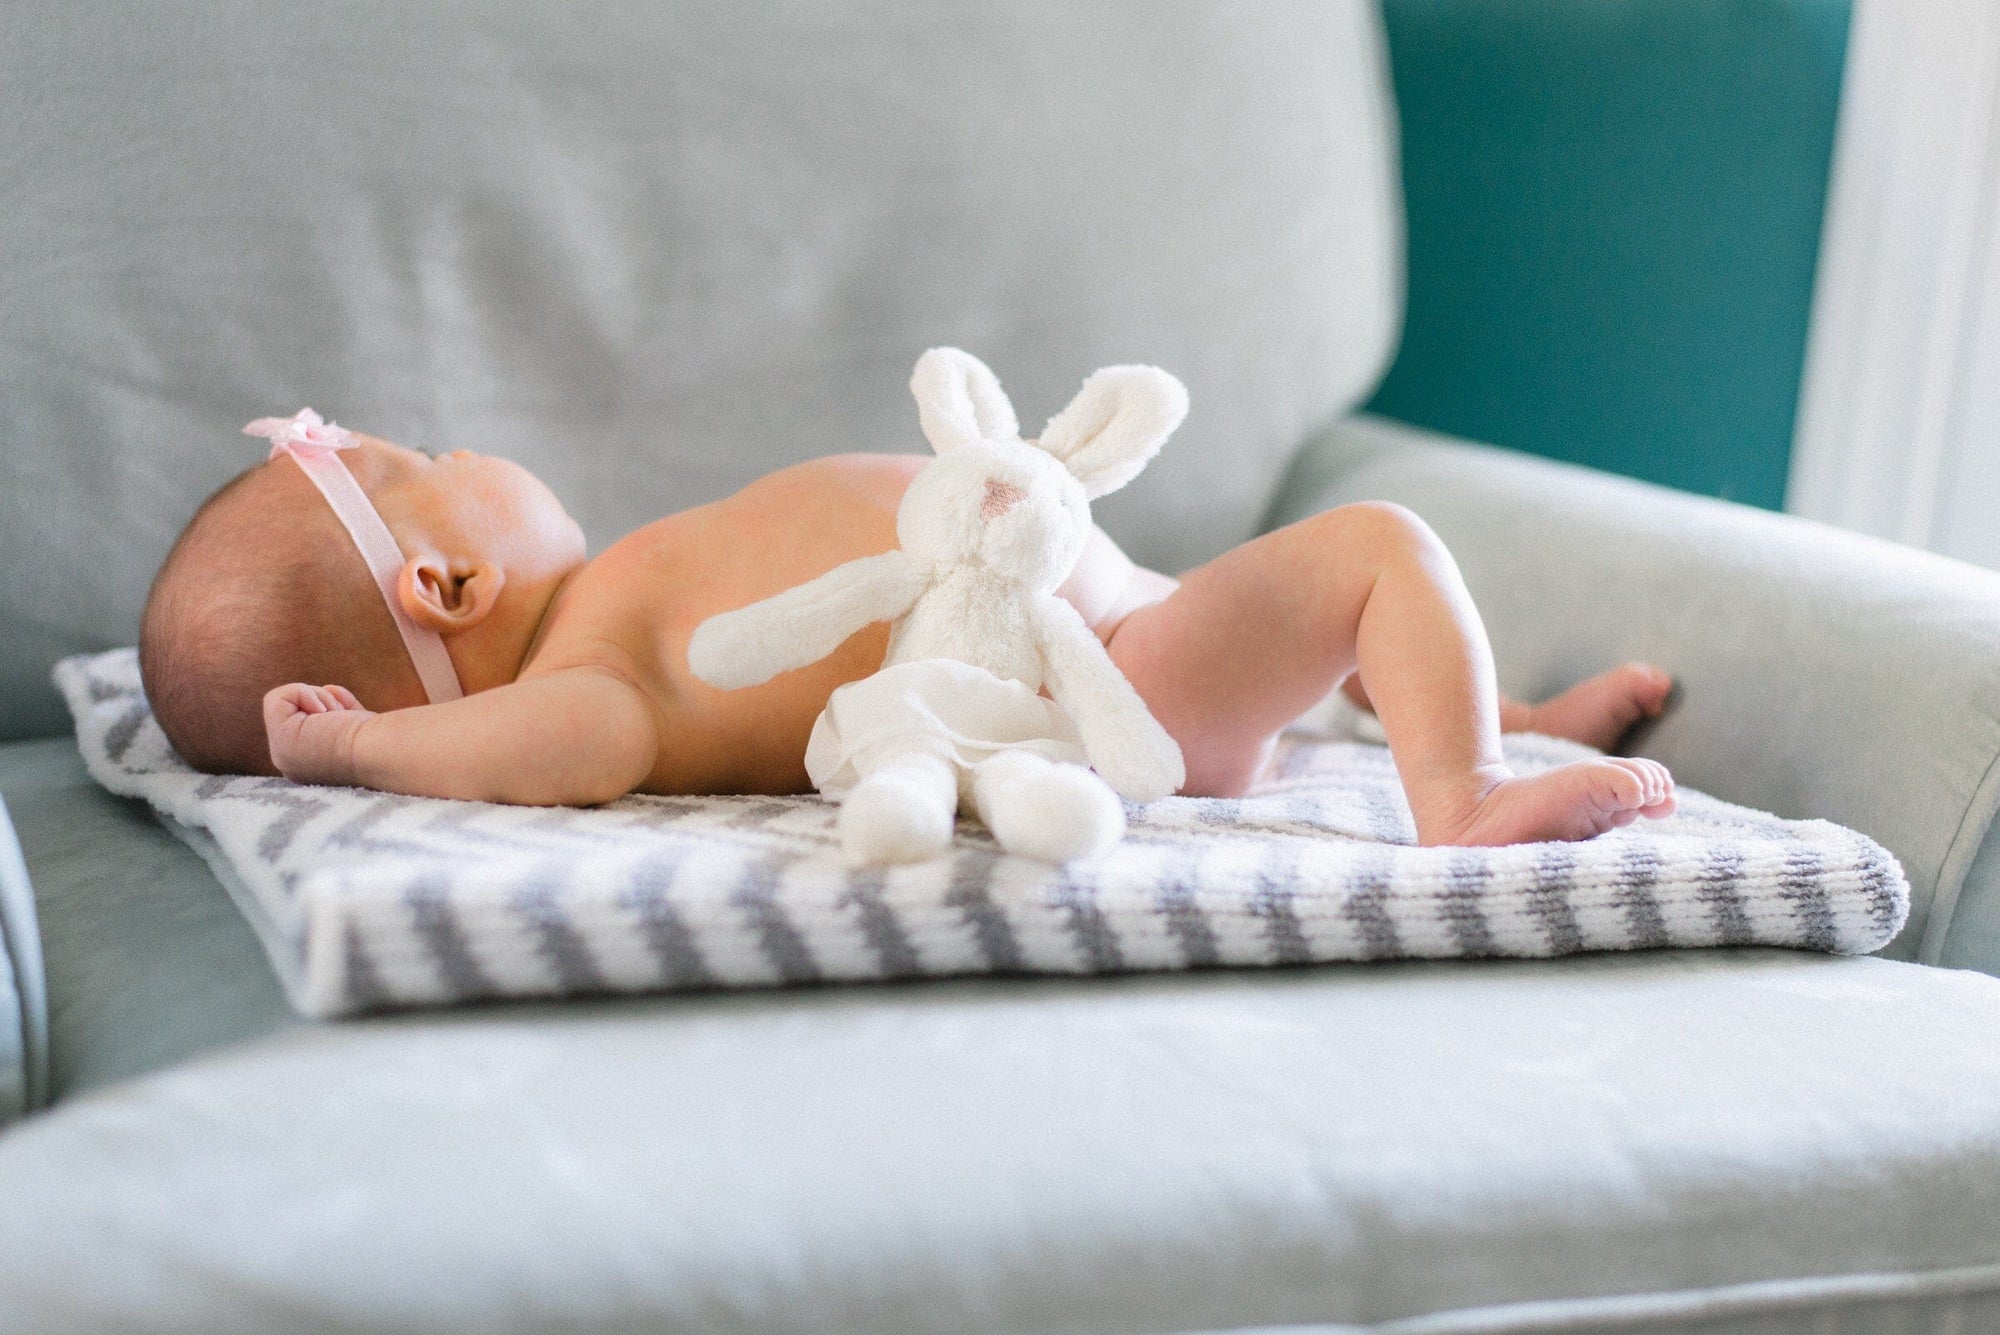 Comparatif : quelle est la meilleure lessive naturelle pour bébé ? 🍼